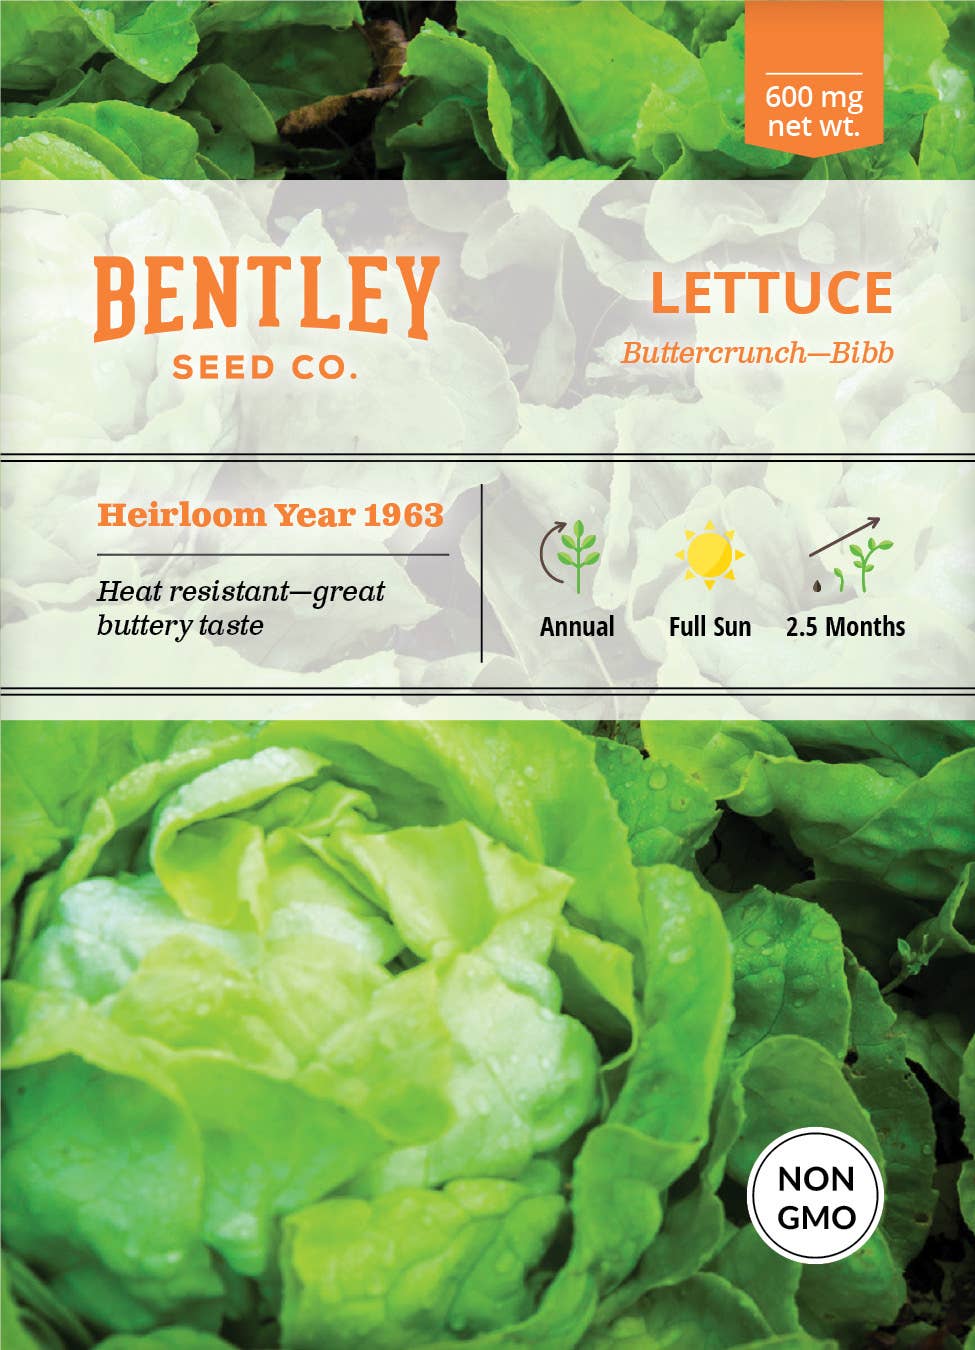 Bentley Seed Co. - Lettuce Buttercrunch